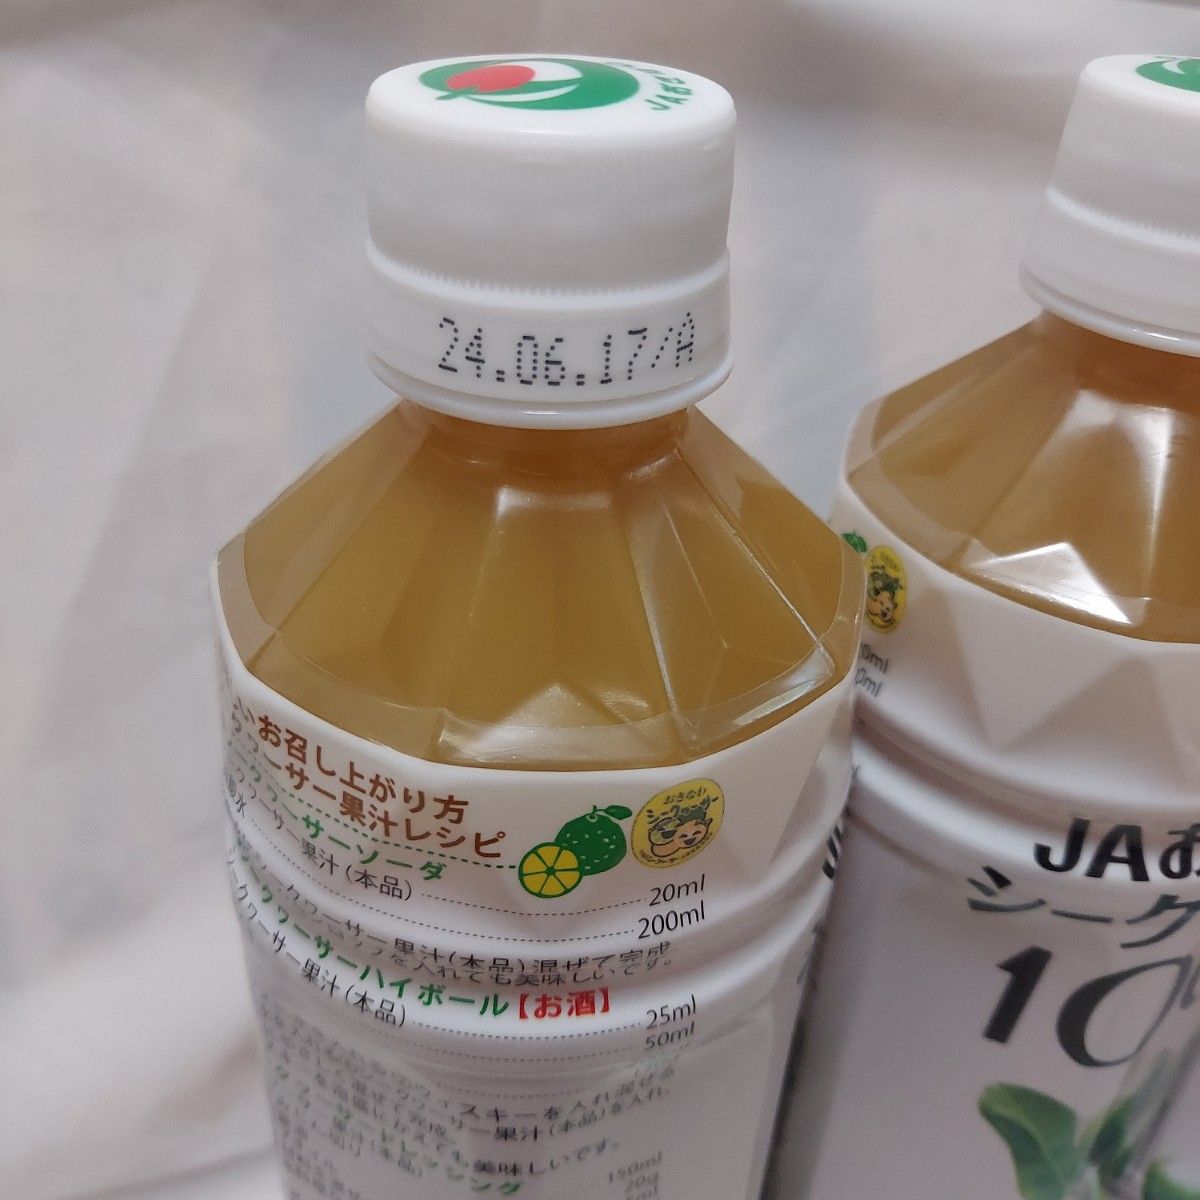 シークヮーサージュース　シークヮーサー　ジュース　JAおきなわ　果汁100% 　保存料無添加　4本